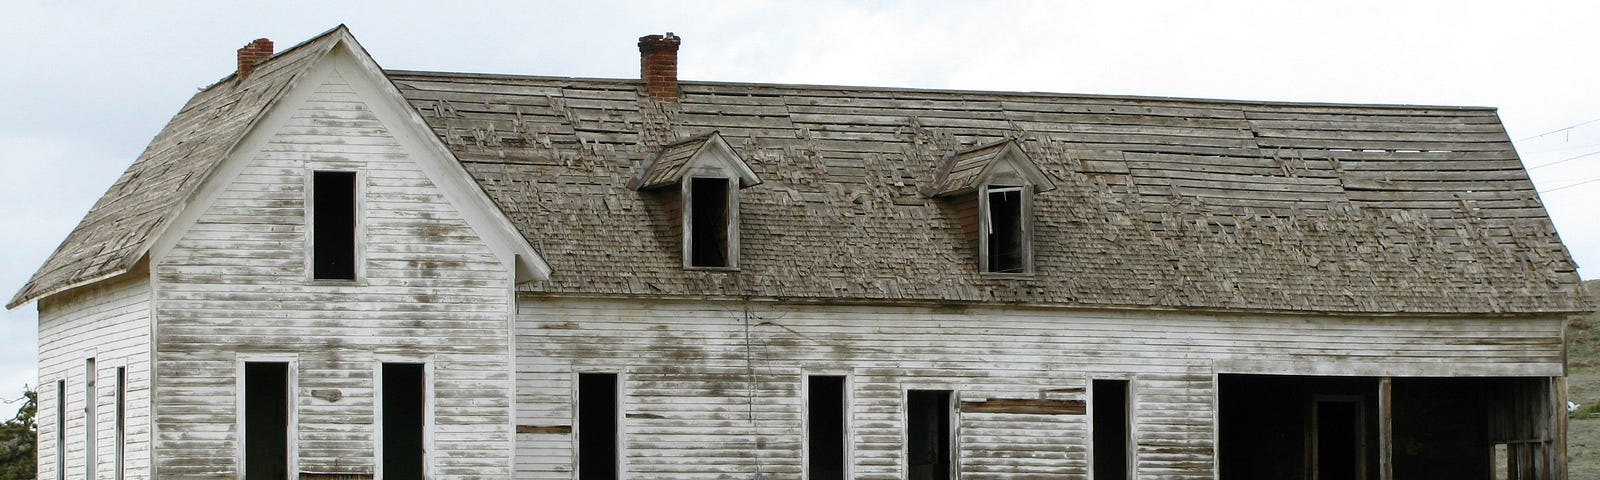 An abandoned rural farmhouse